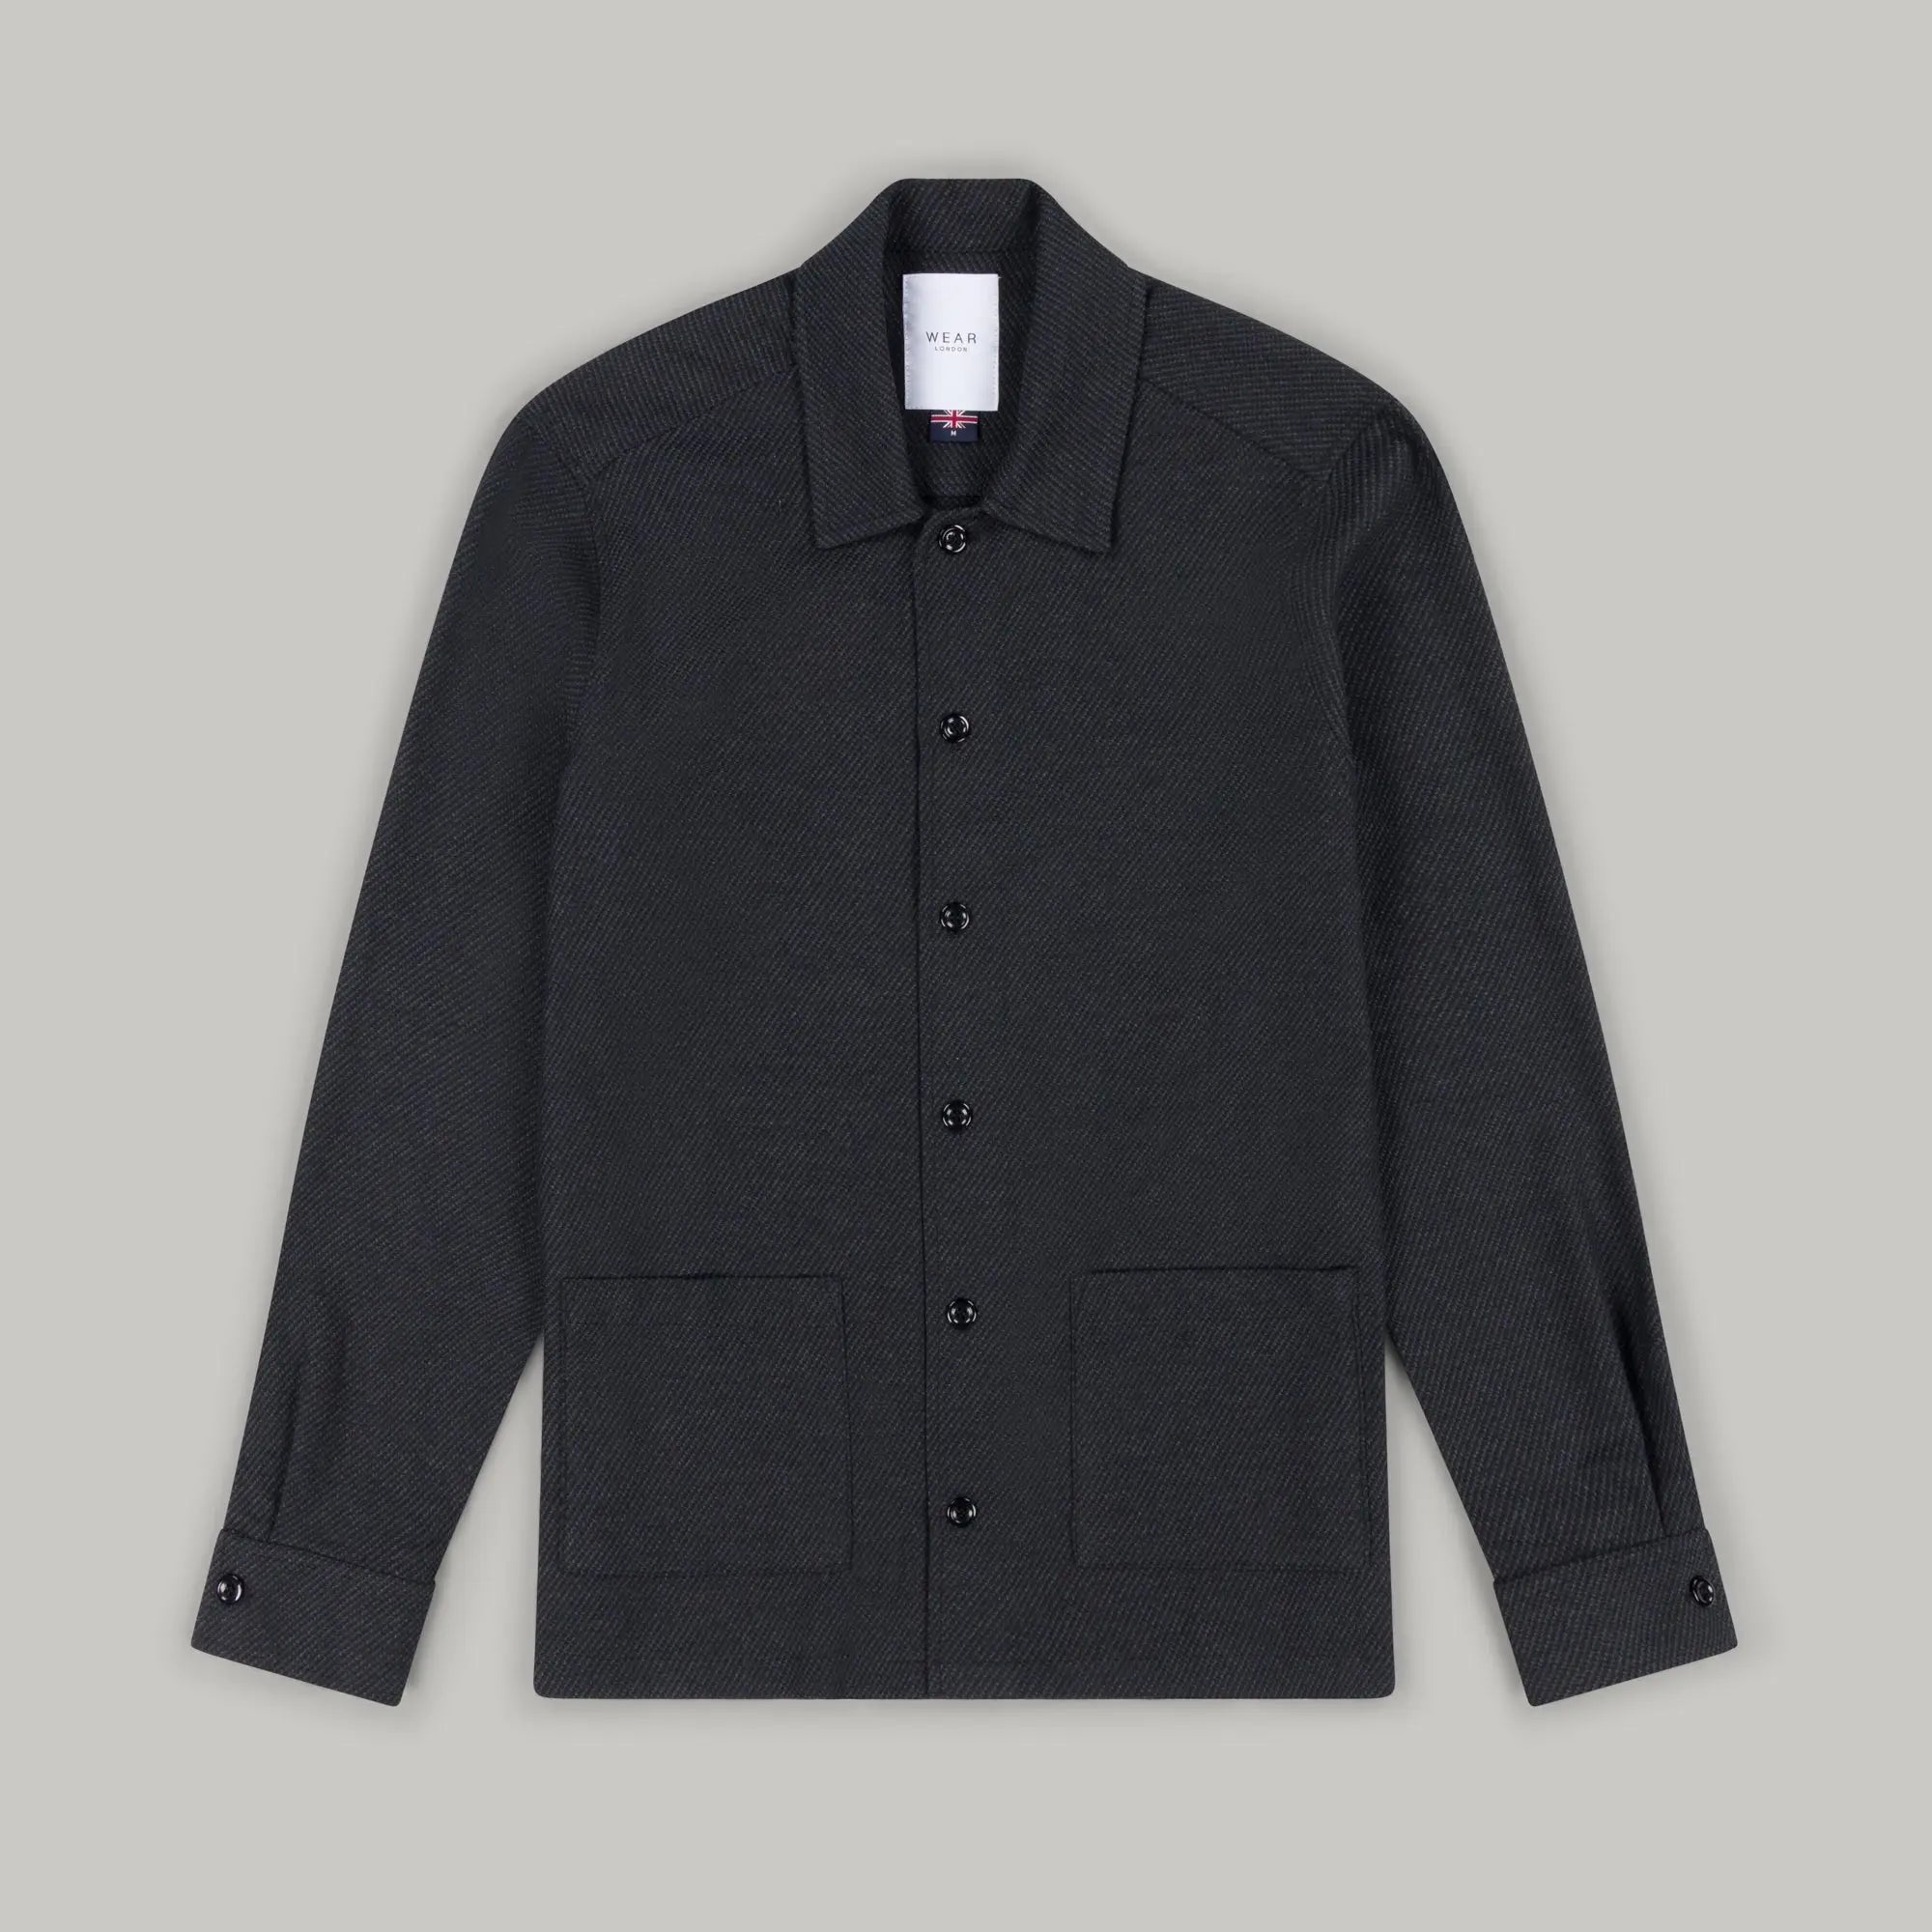 Chapman Shirt  - Plain Charcoal Wear London